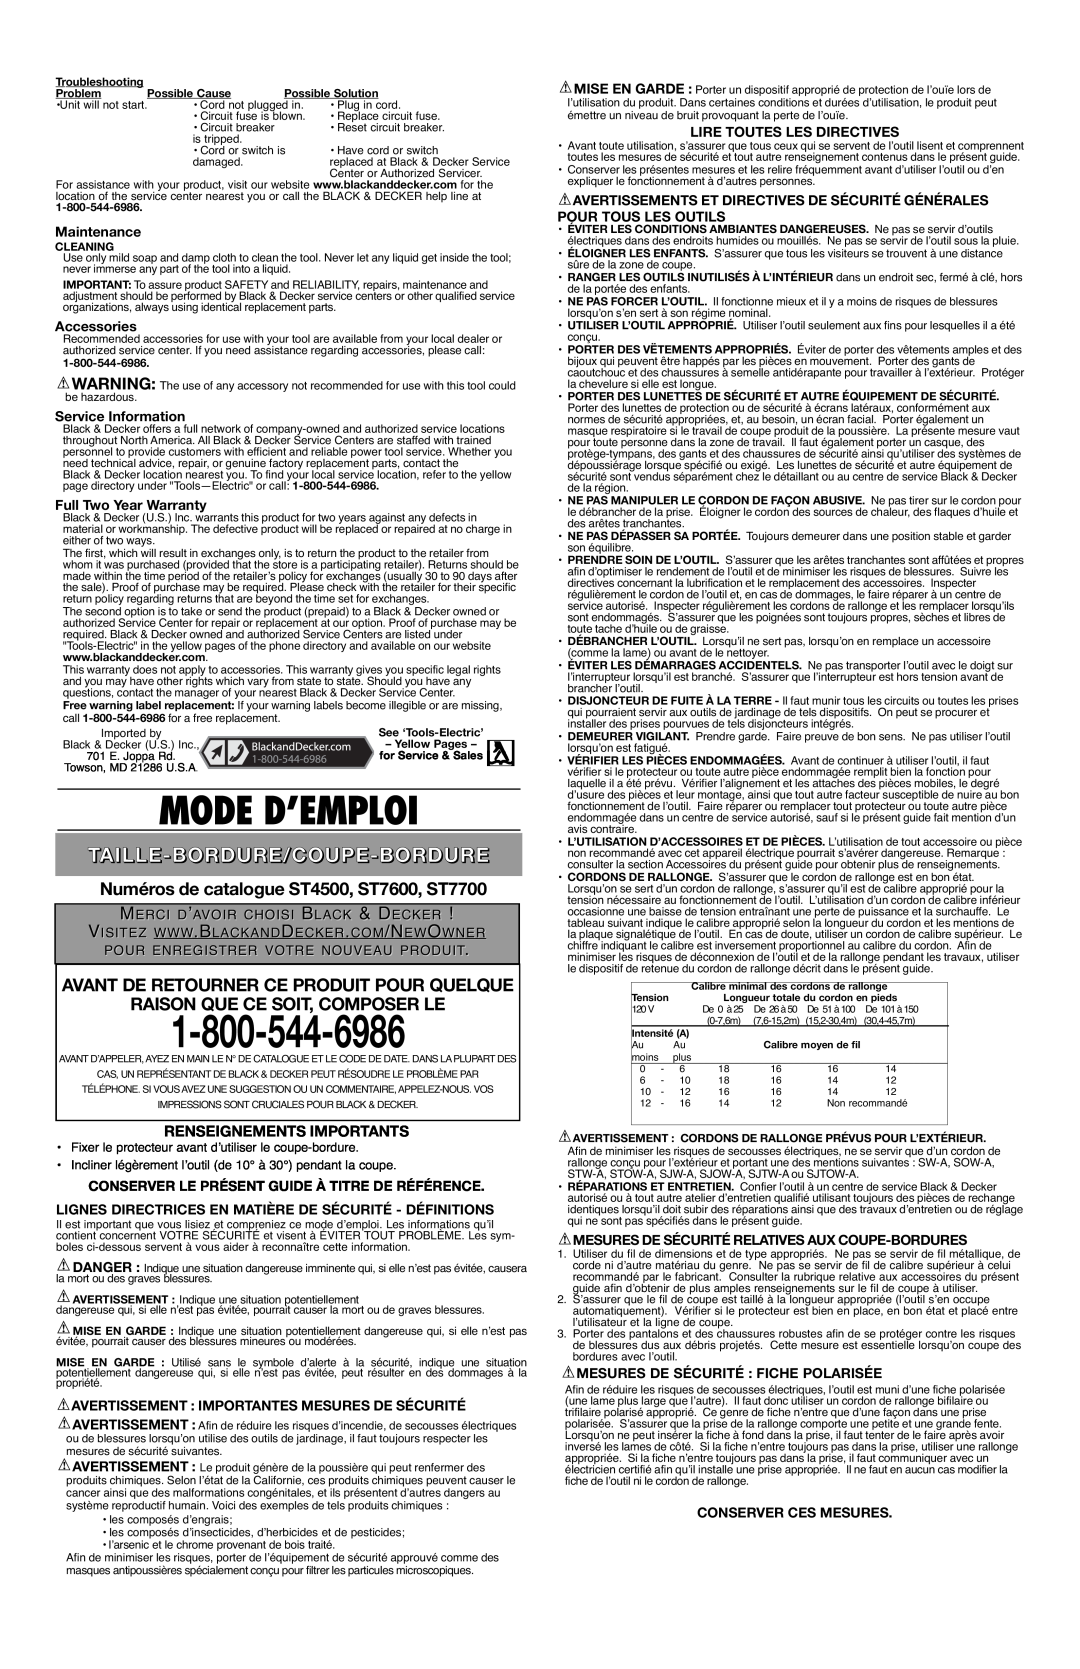 Black & Decker Numéros de catalogue ST4500, ST7600, ST7700, Avant De Retourner Ce Produit Pour Quelque, Maintenance 